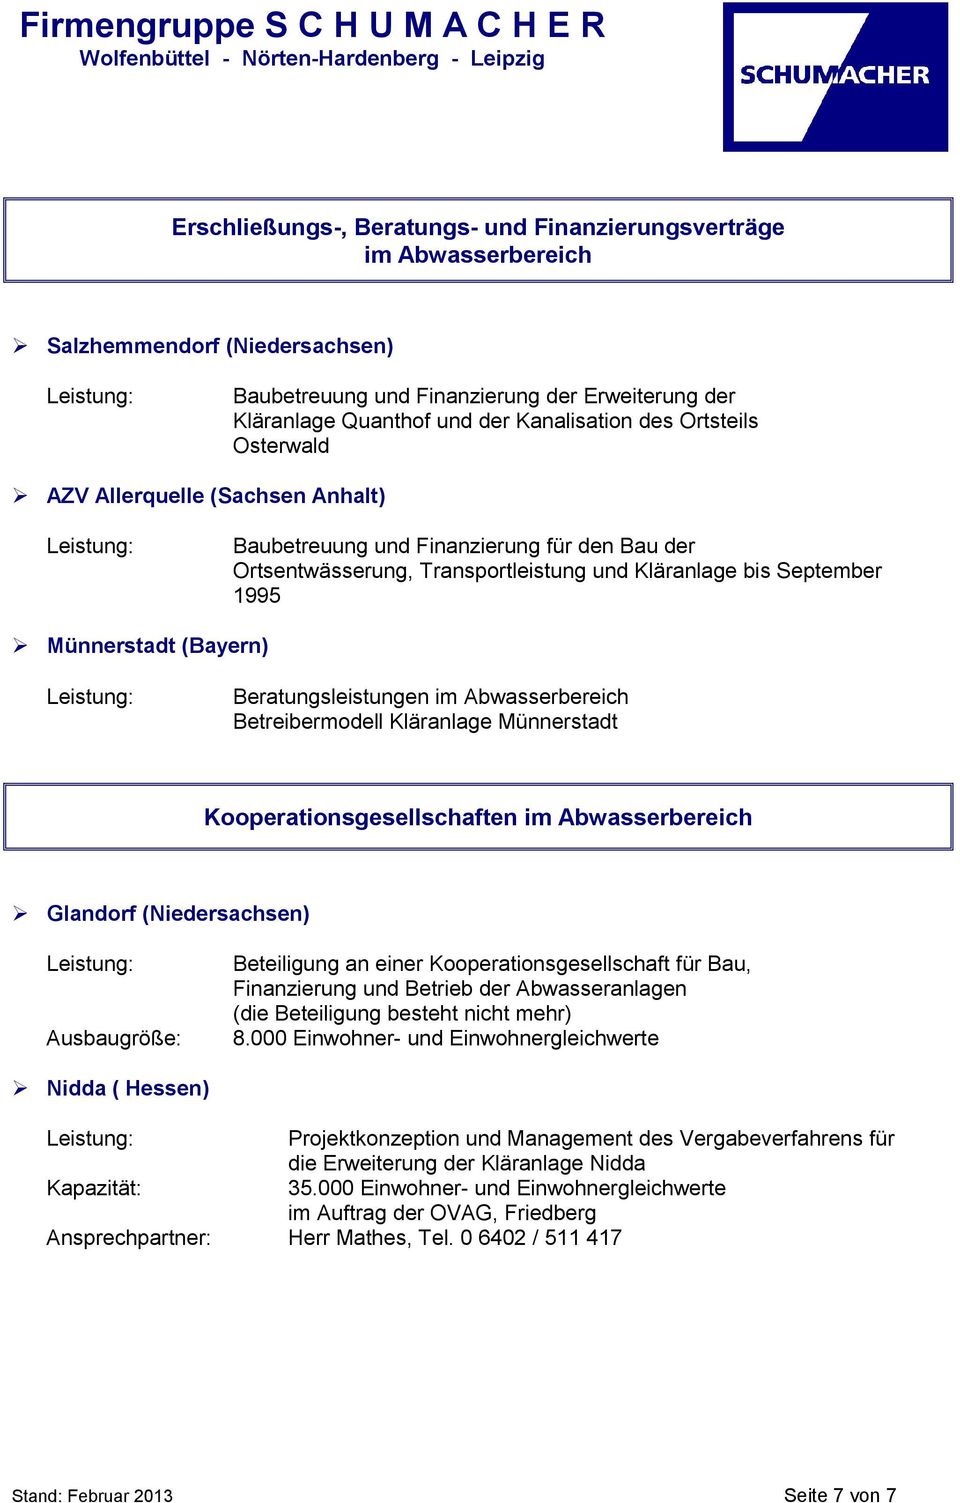 Beratungsleistungen im Abwasserbereich Betreibermodell Kläranlage Münnerstadt Kooperationsgesellschaften im Abwasserbereich Glandorf (Niedersachsen) Ausbaugröße: Beteiligung an einer